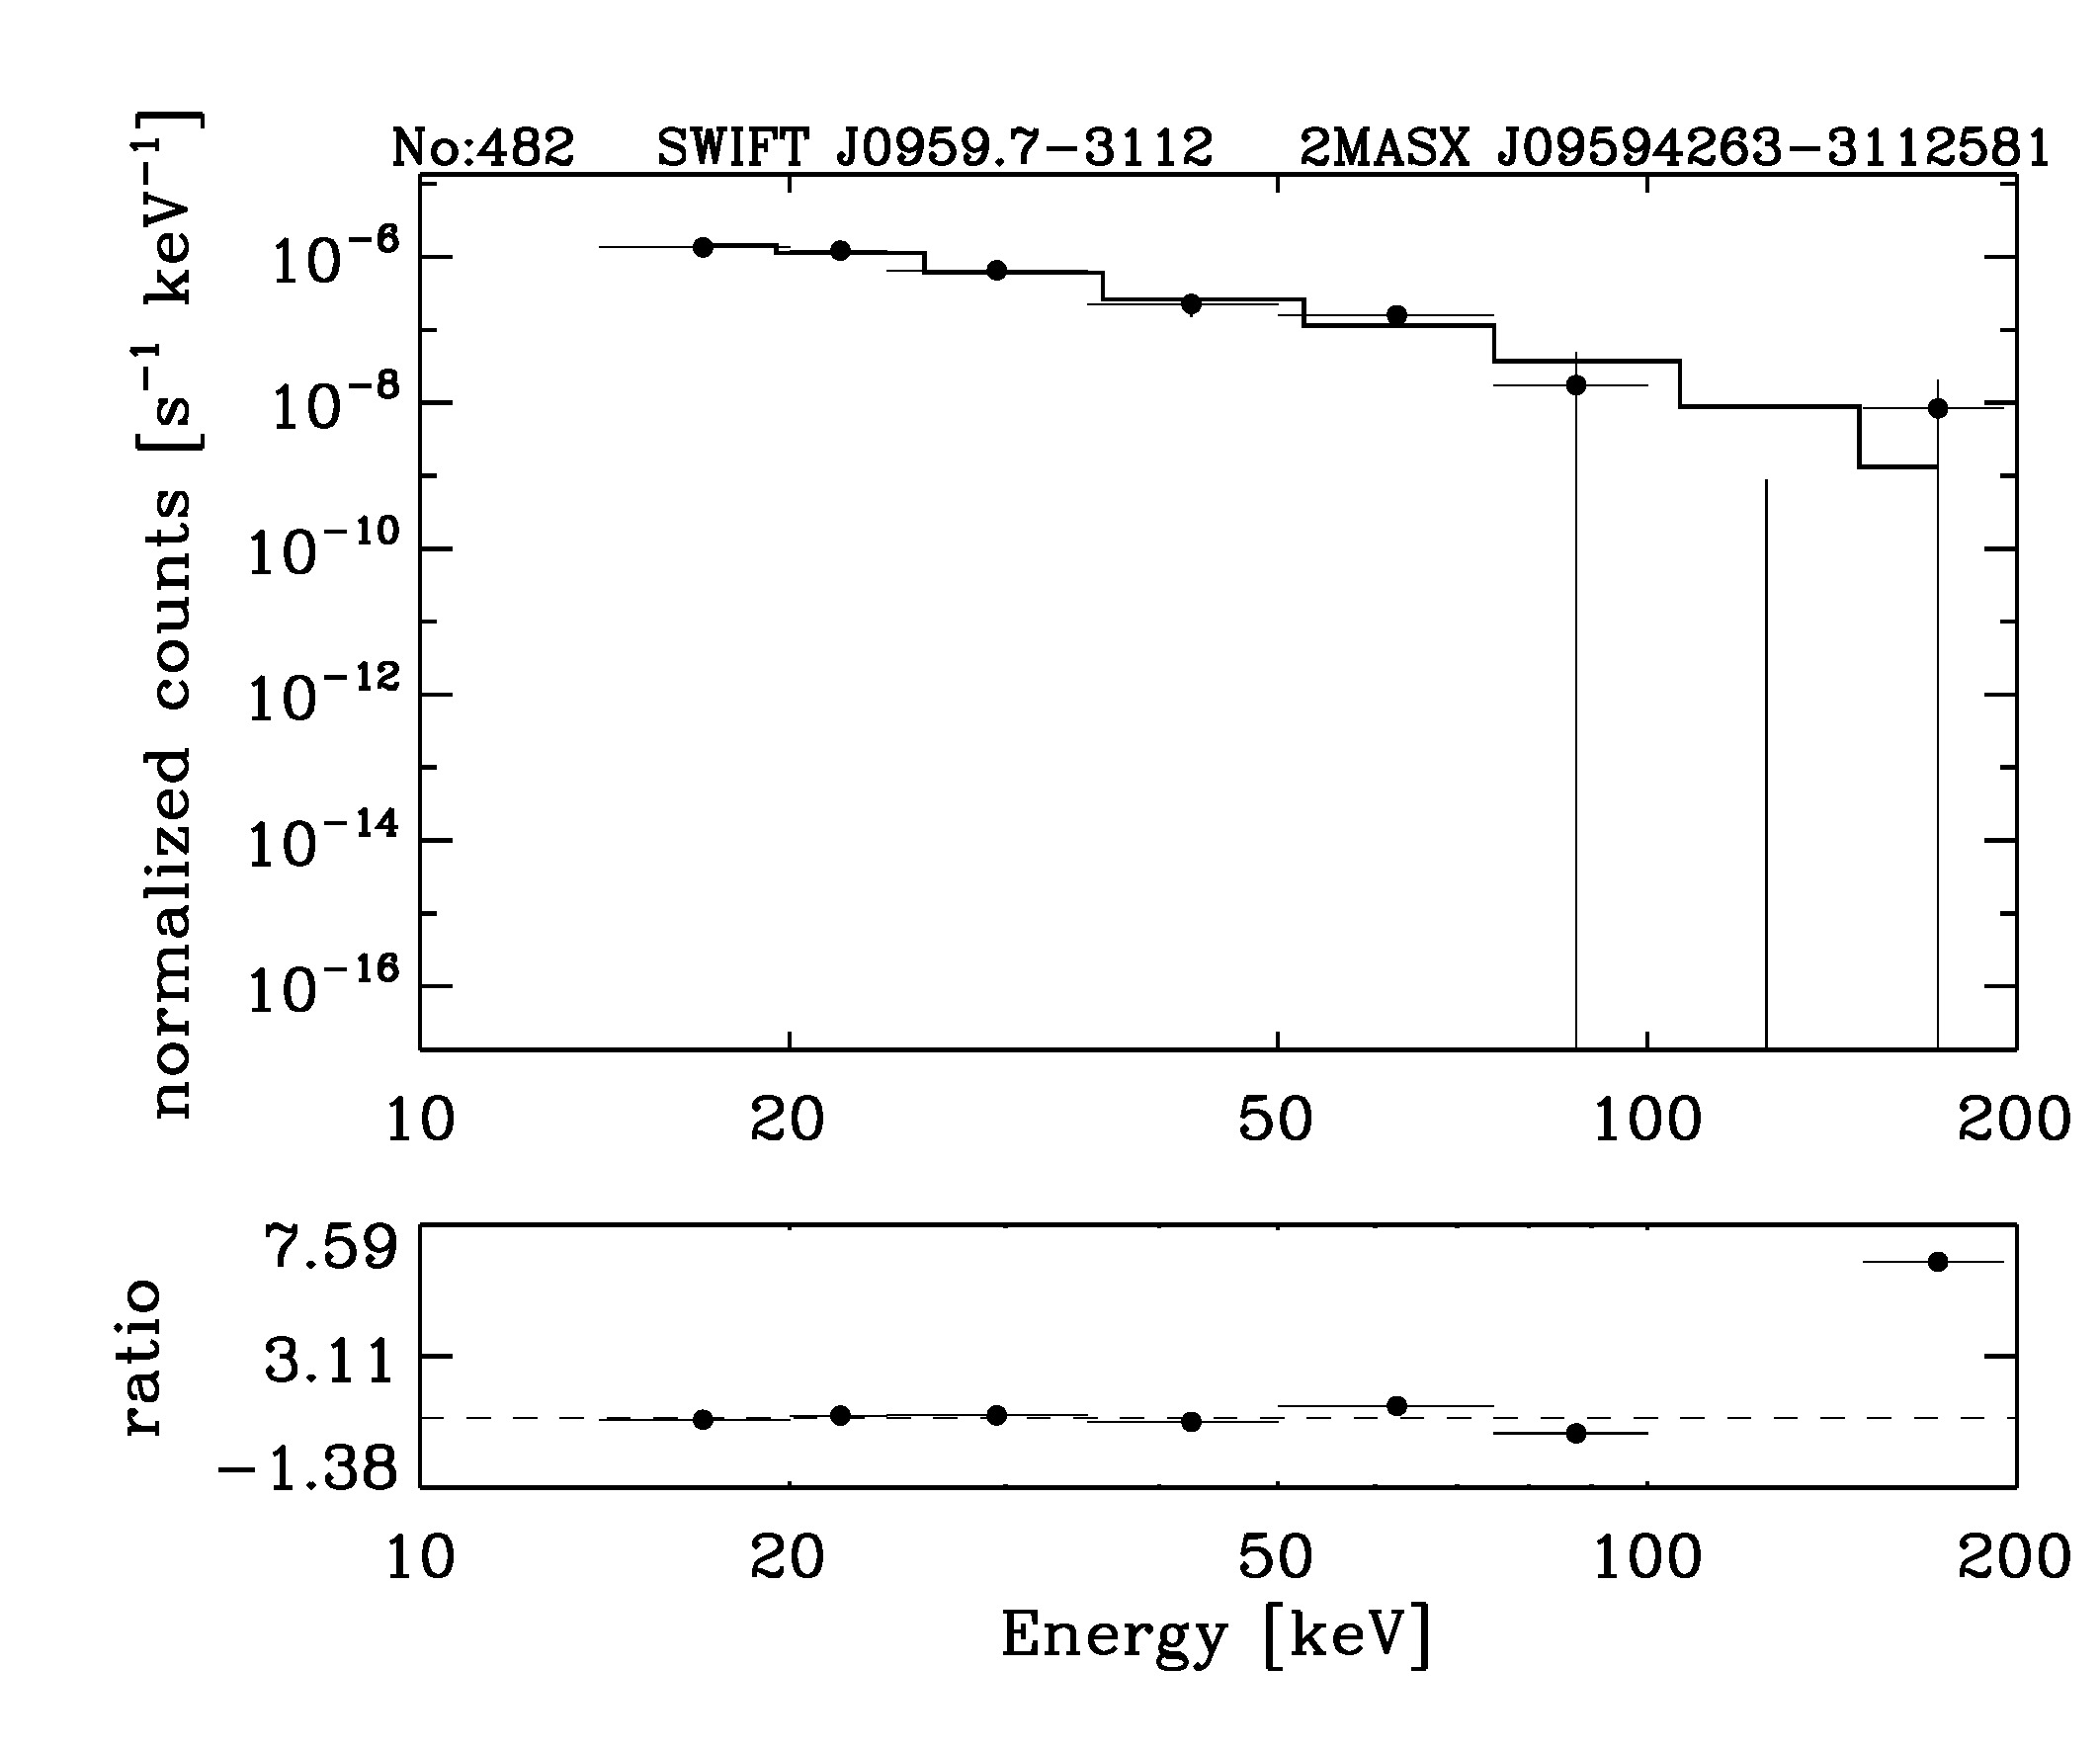 BAT Spectrum for SWIFT J0959.7-3112